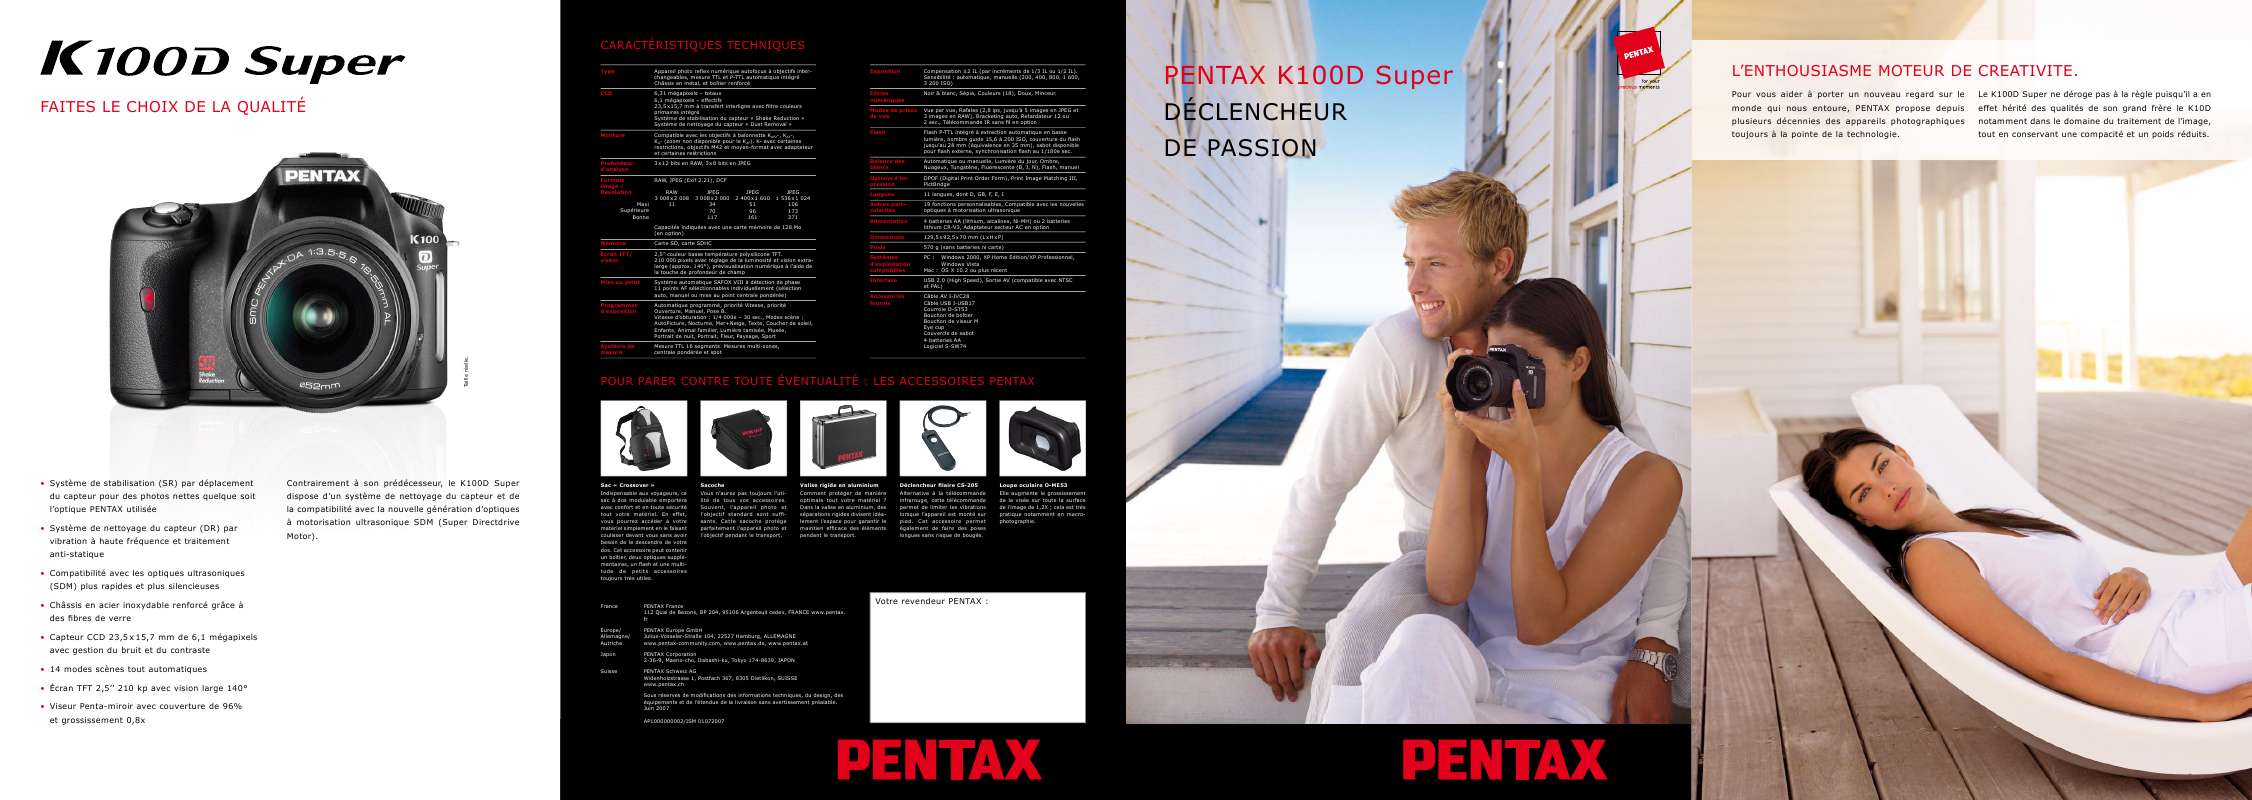 Guide utilisation PENTAX K100D SUPER_F  de la marque PENTAX